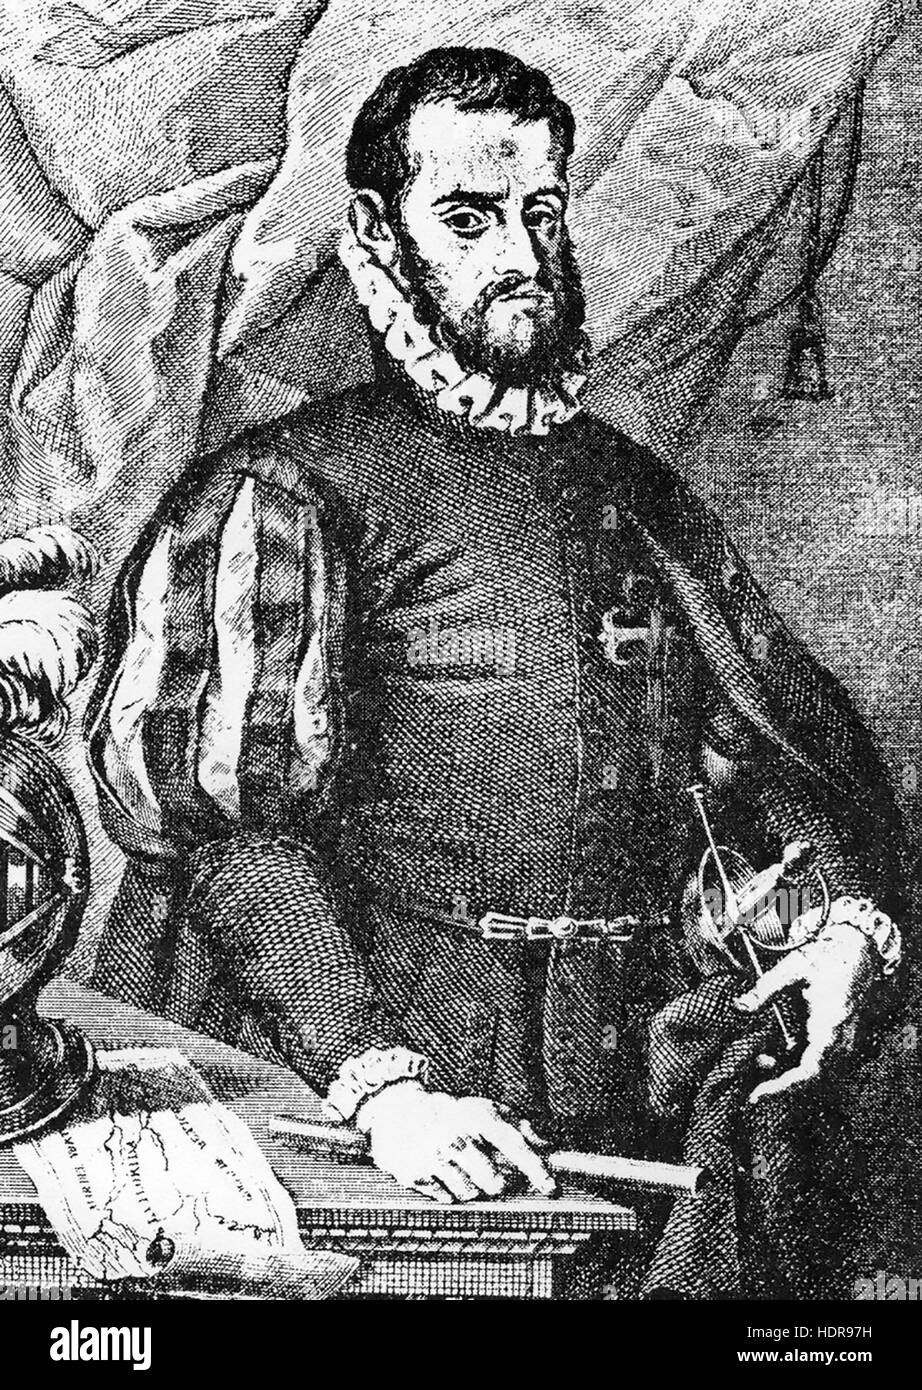 PEDRO MENENDEZ de AVILES (1519-1574) Amiral et explorateur espagnol Banque D'Images